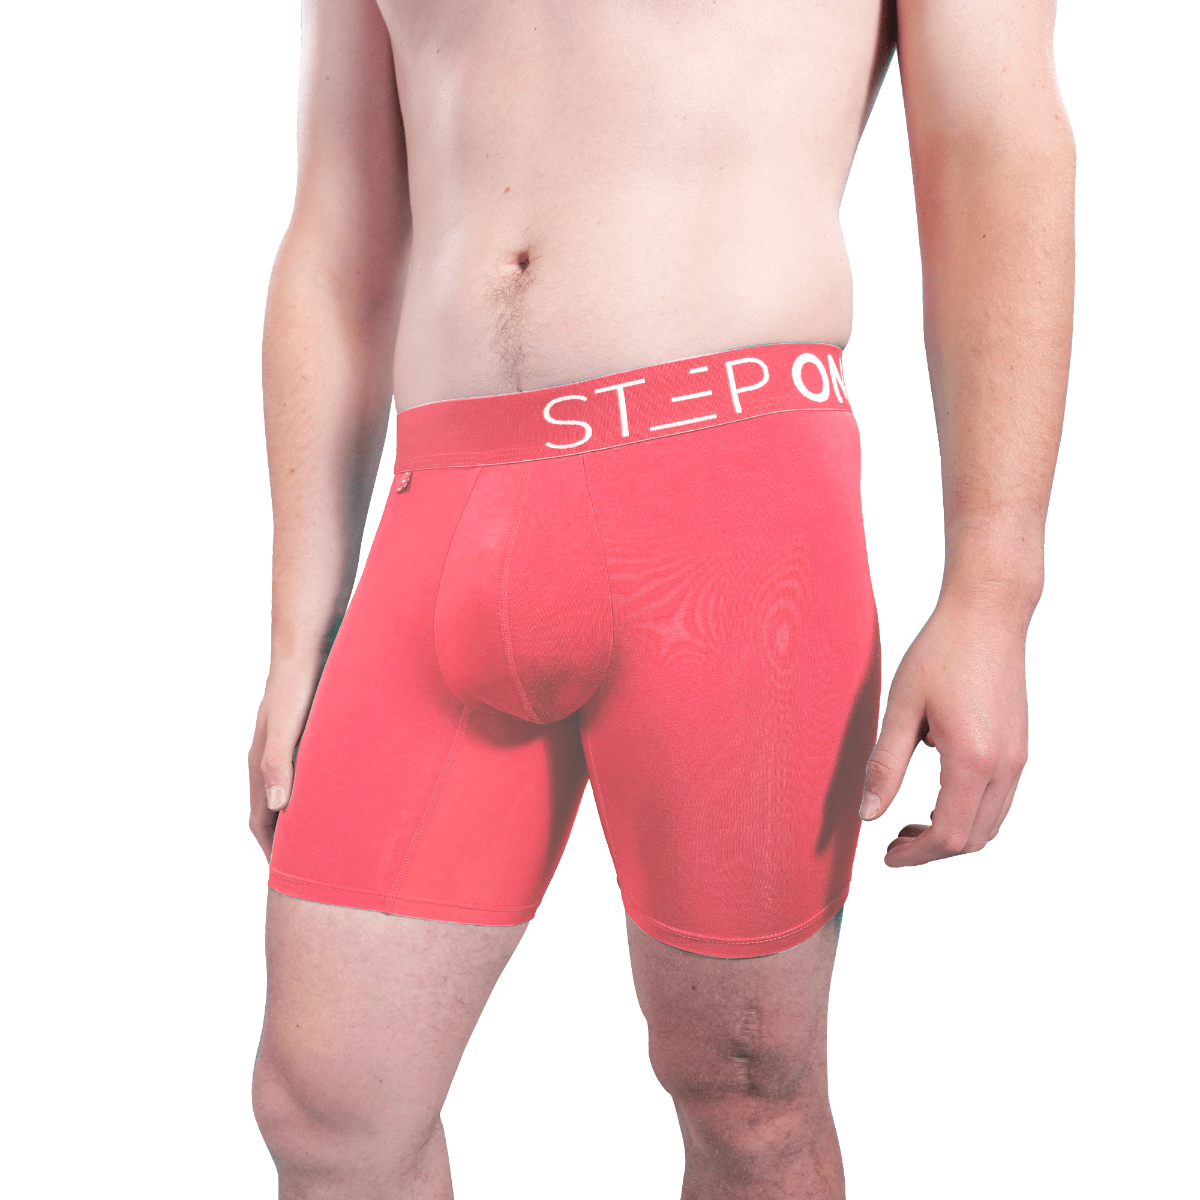 STEP ONE Mens Underwear Boxer Briefs - Underwear for Men, Moisture